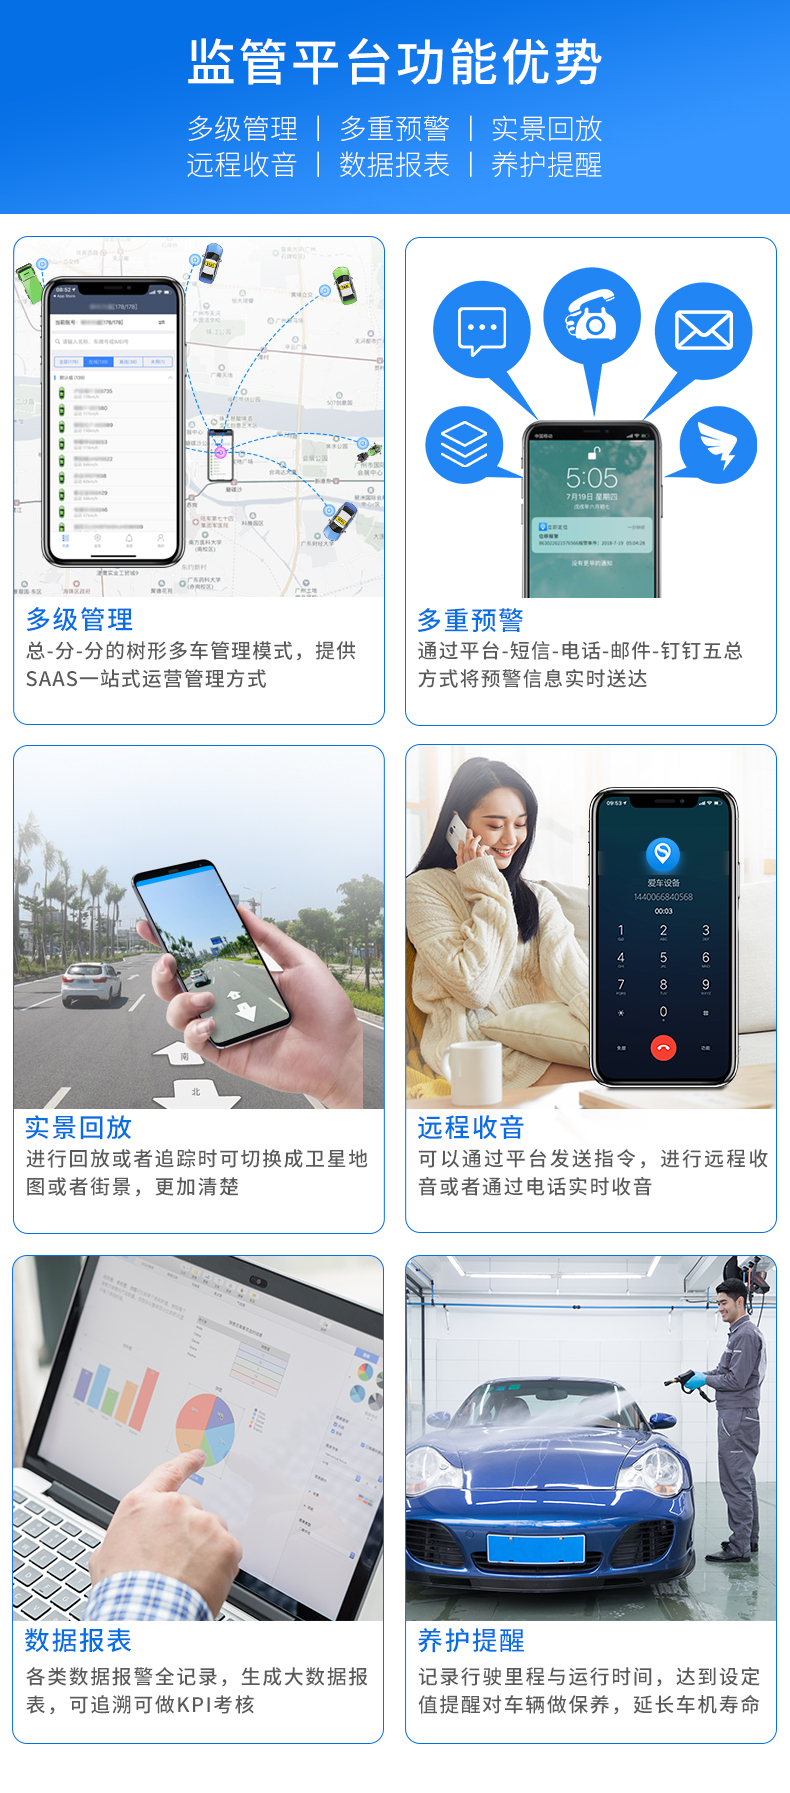 广州哪里有卖车充OBD定位器,北斗GPS定位器生产厂家_广州市铭途信息科技有限公司